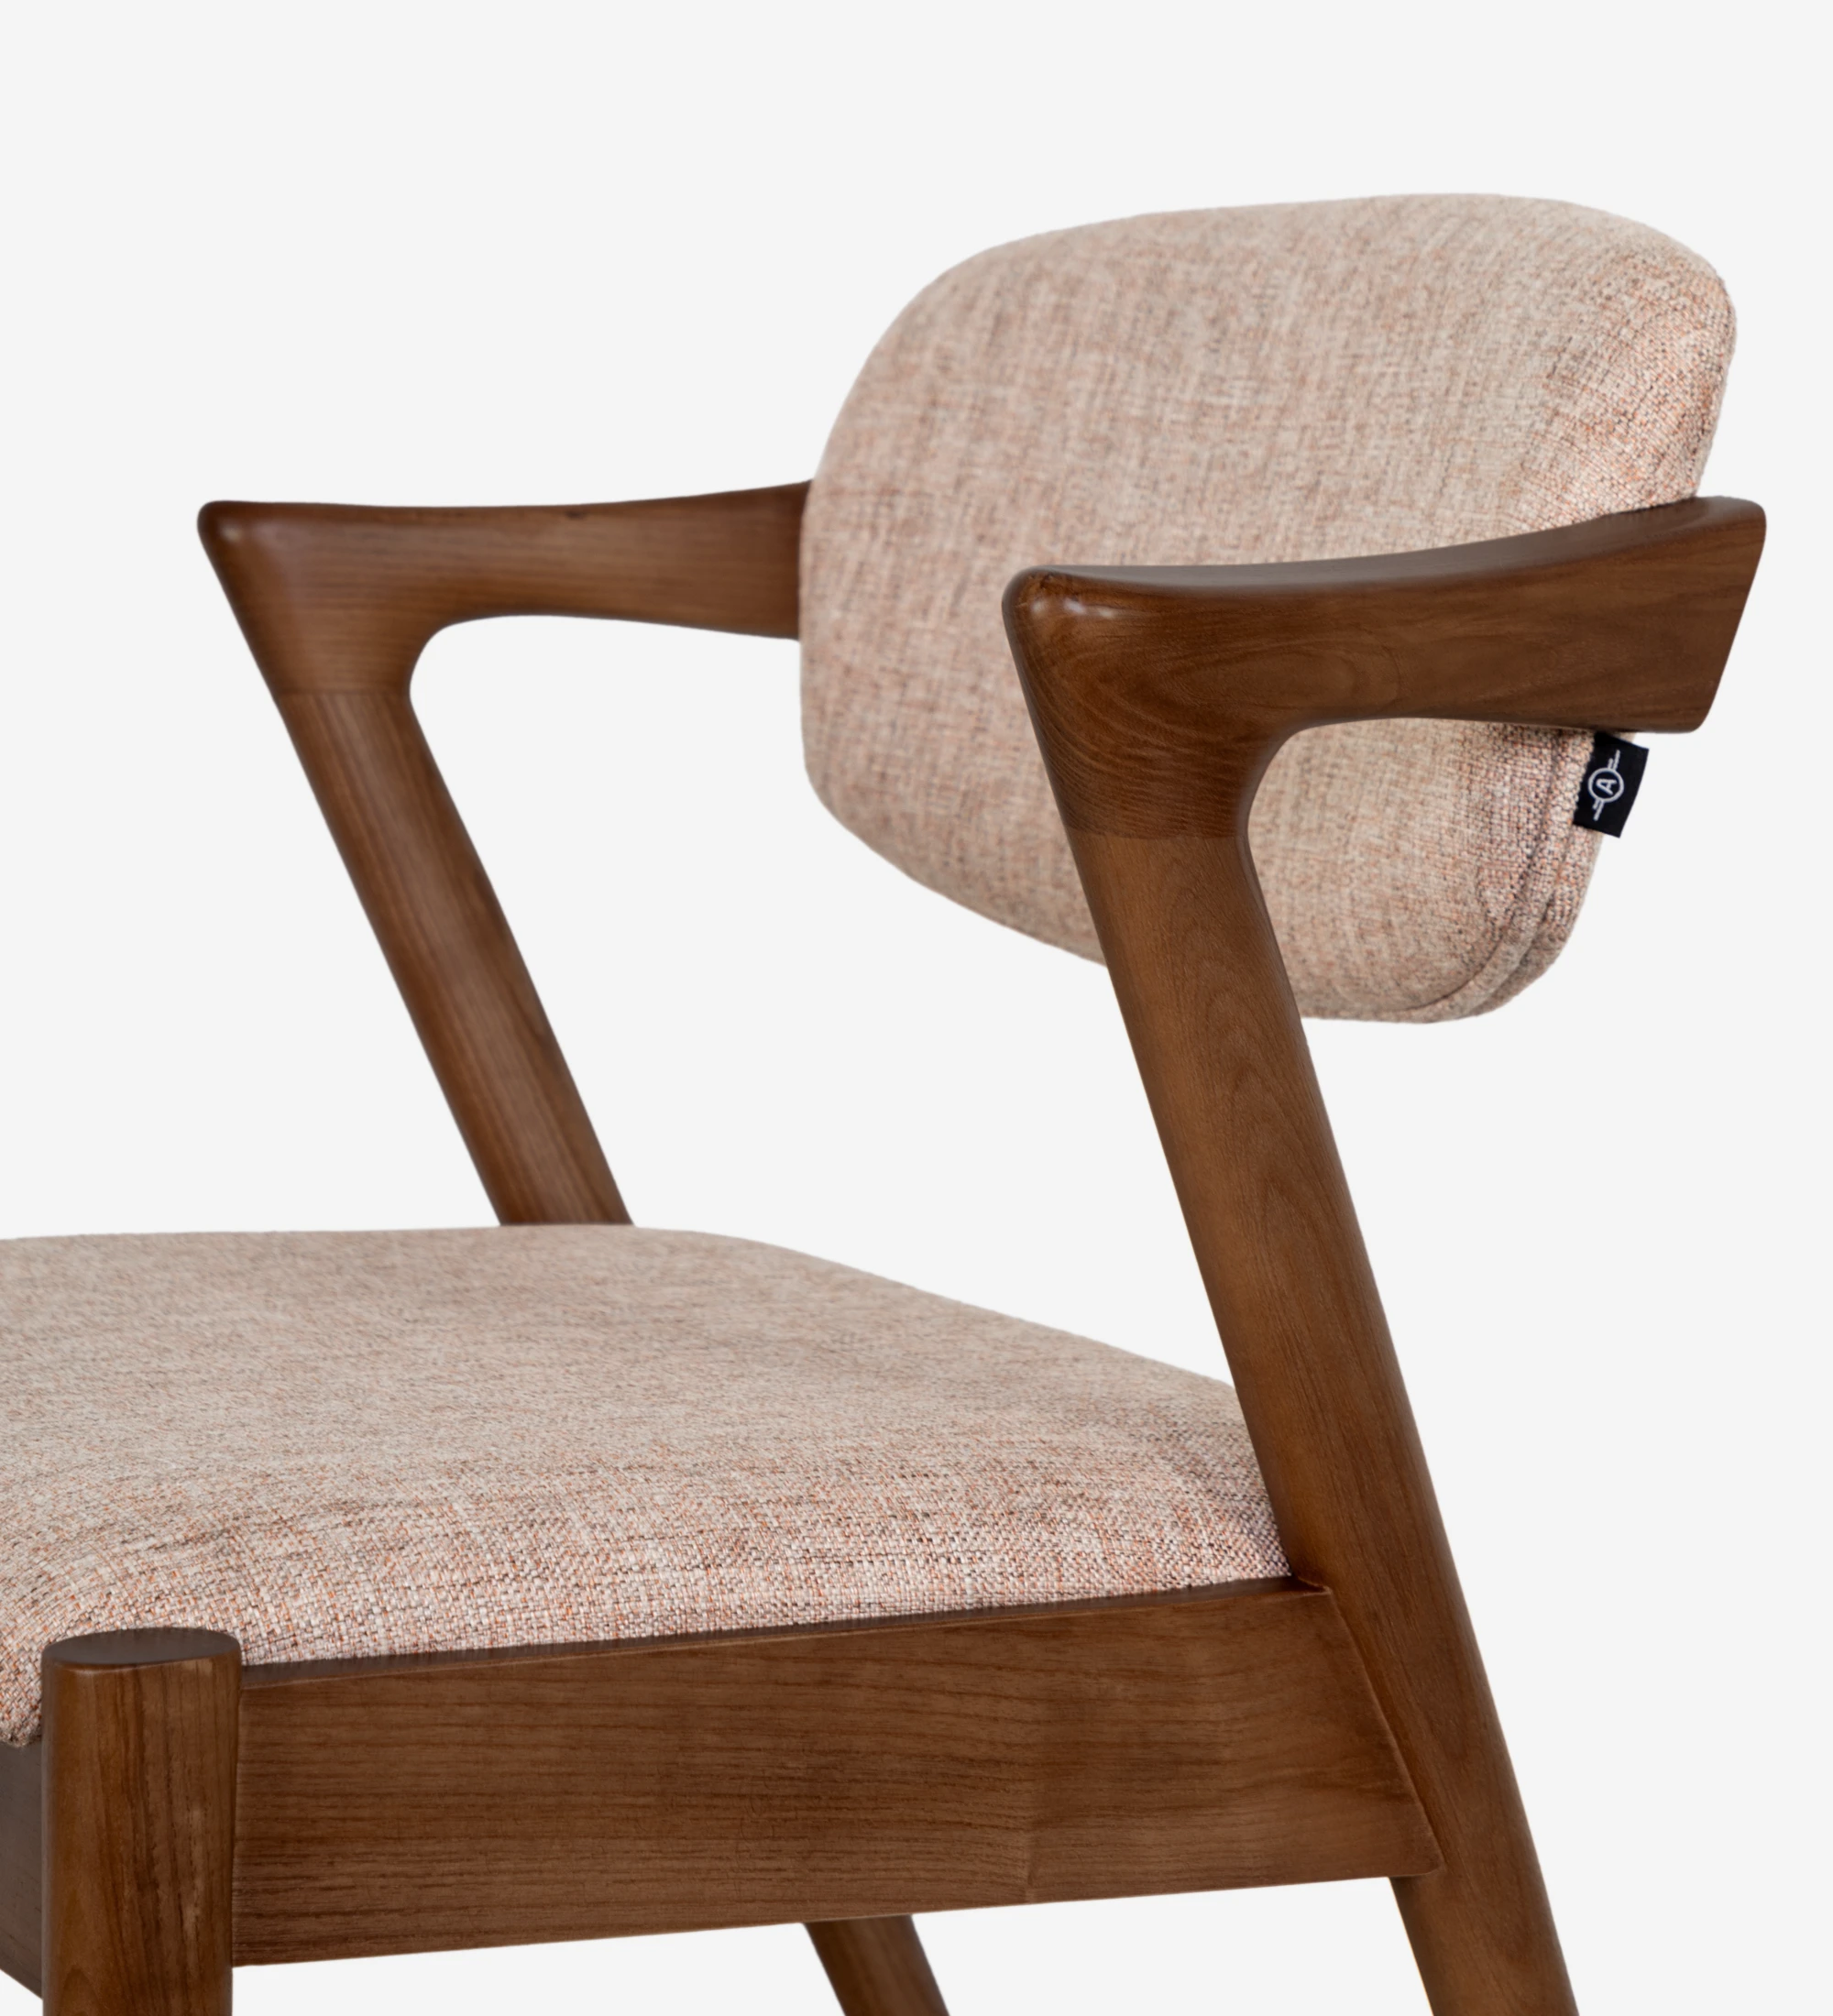 Chaise en bois de frêne couleur noyer, avec assise et dossier rembourrés en tissu.